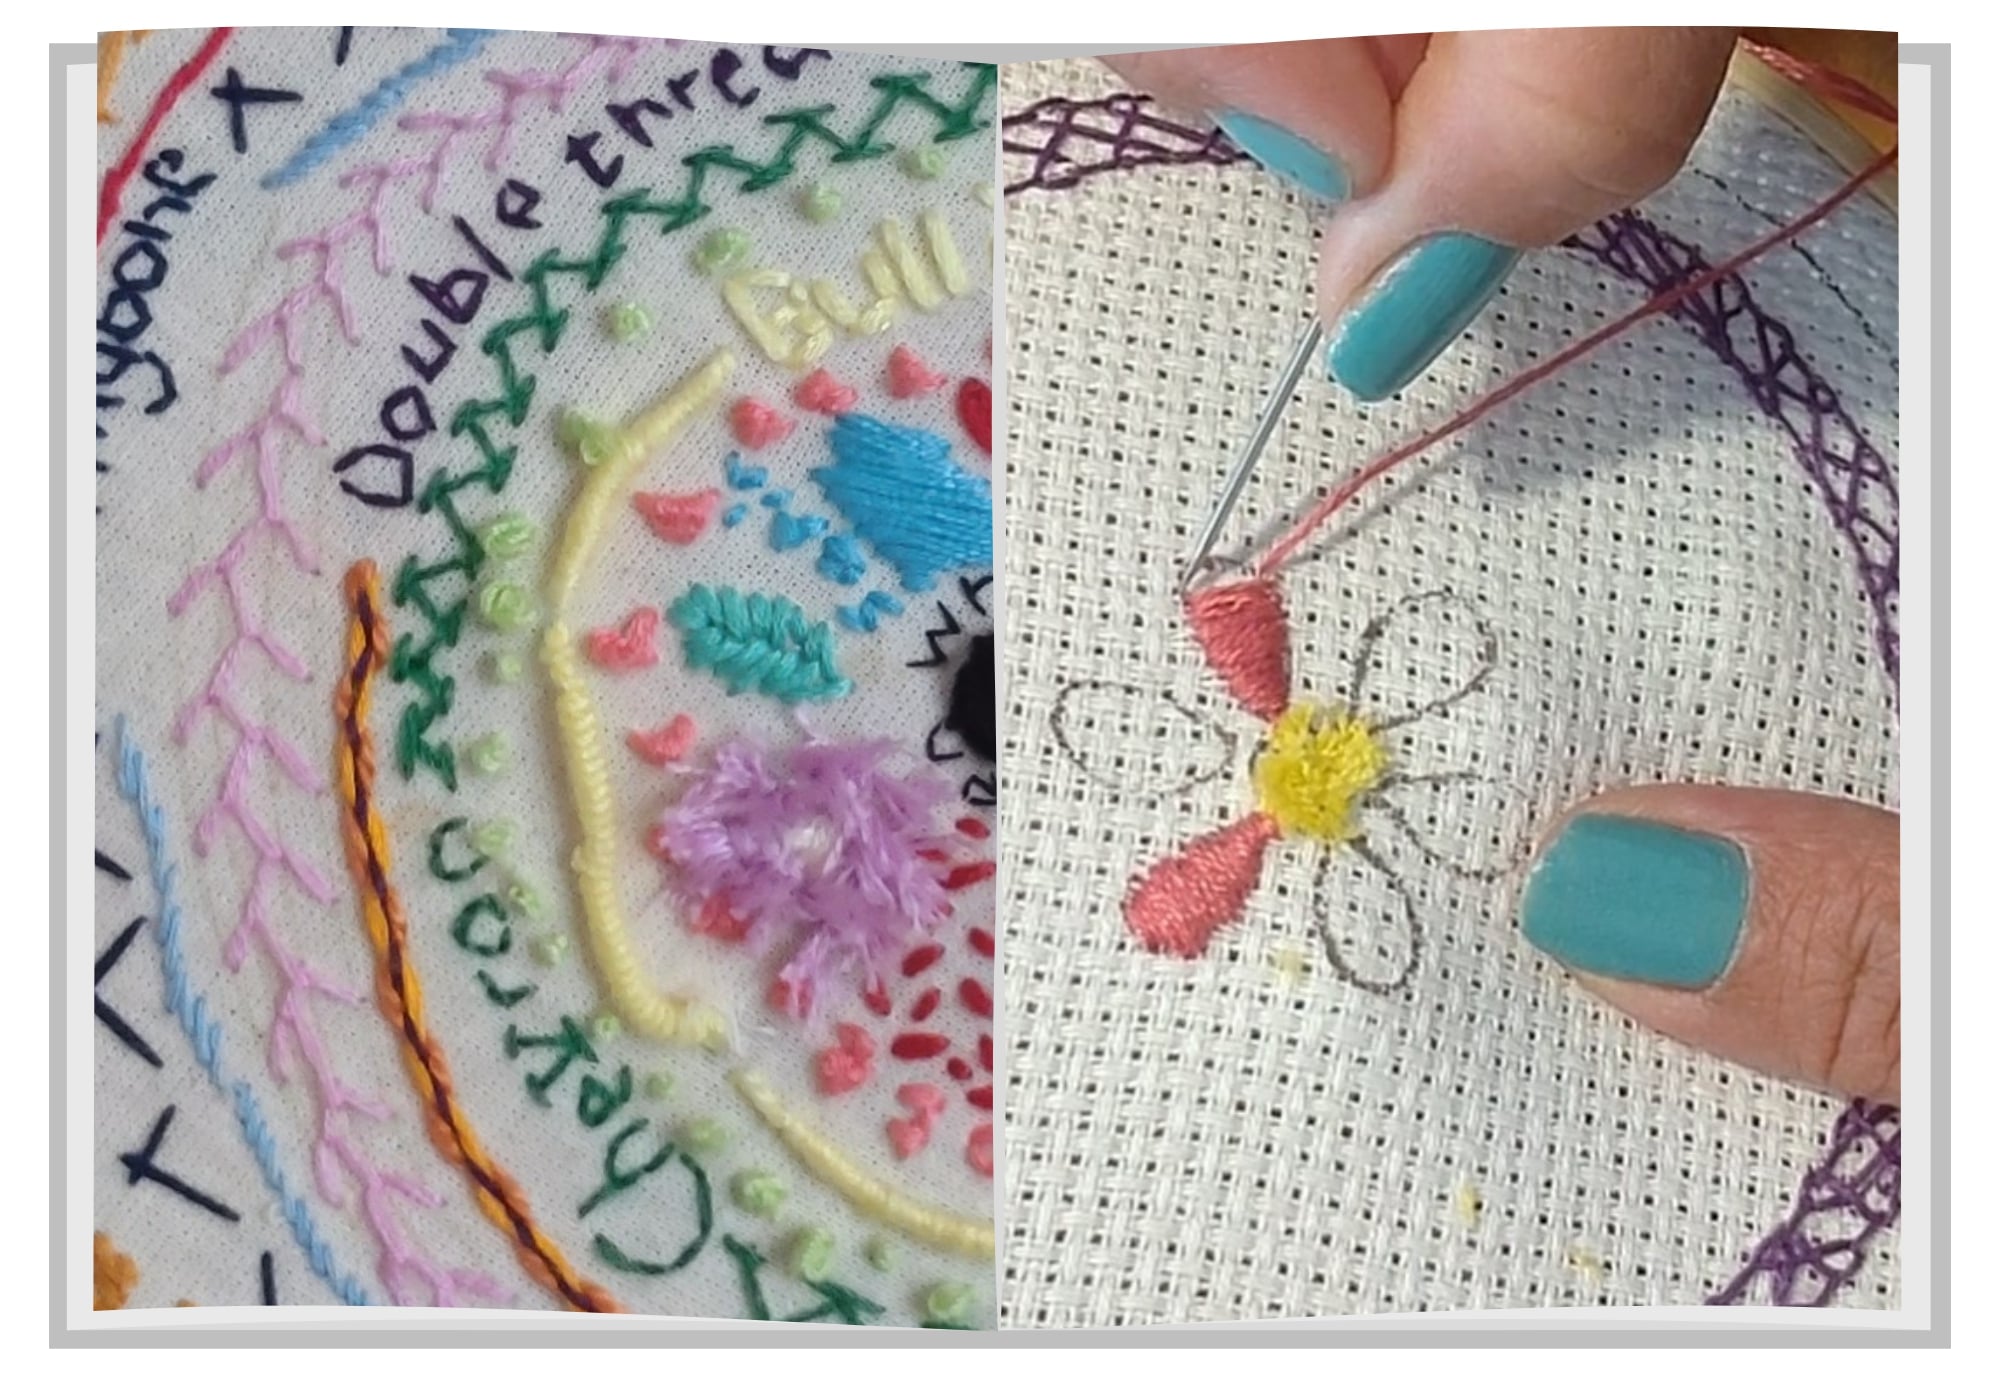 Workshop – Adult Embroidery Workshop